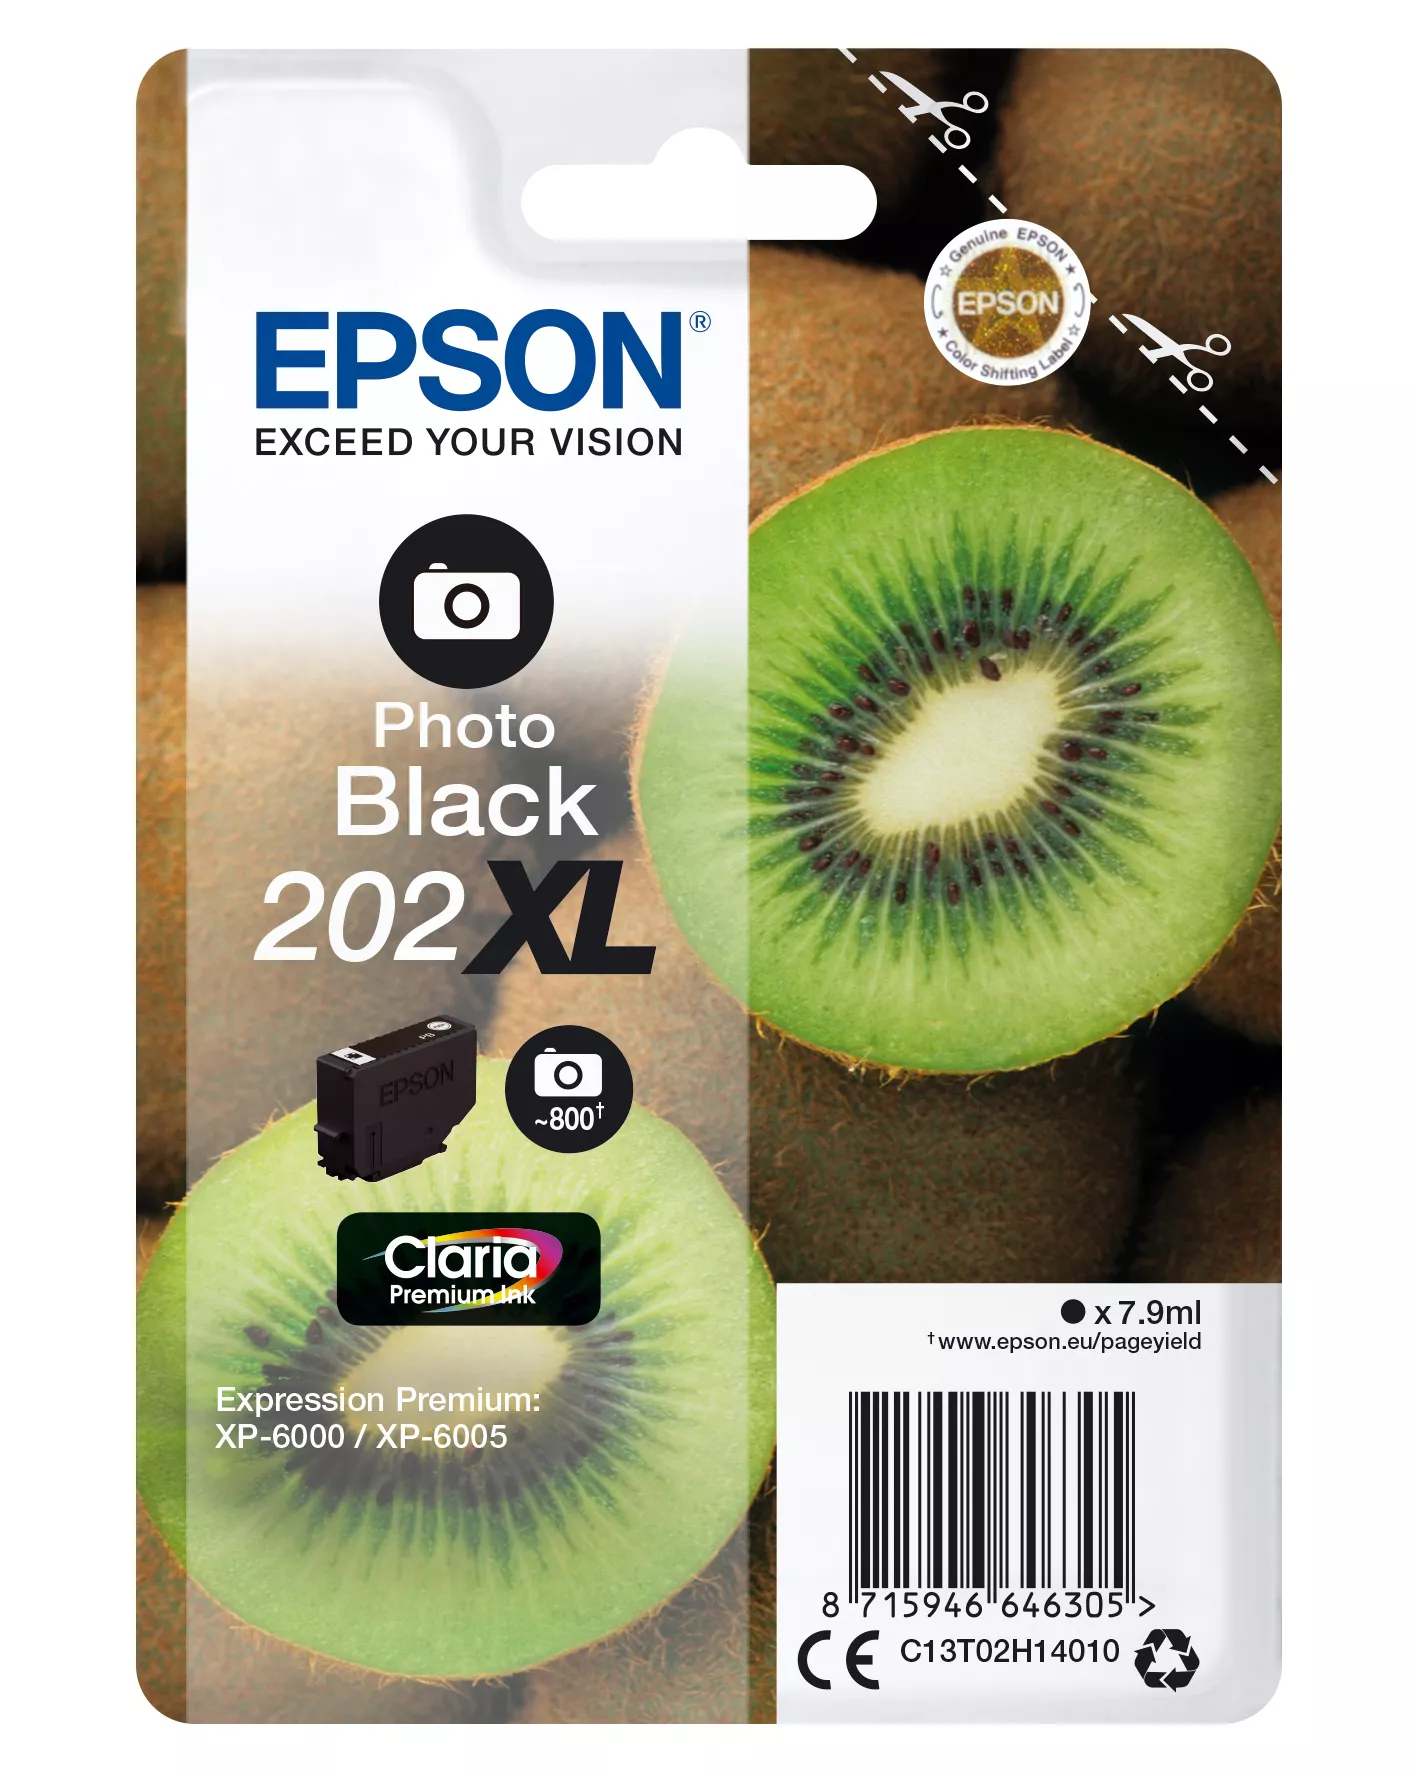 Vente Cartouches d'encre EPSON Encre Claria Premium - Cartouche Kiwi 202 Noir sur hello RSE